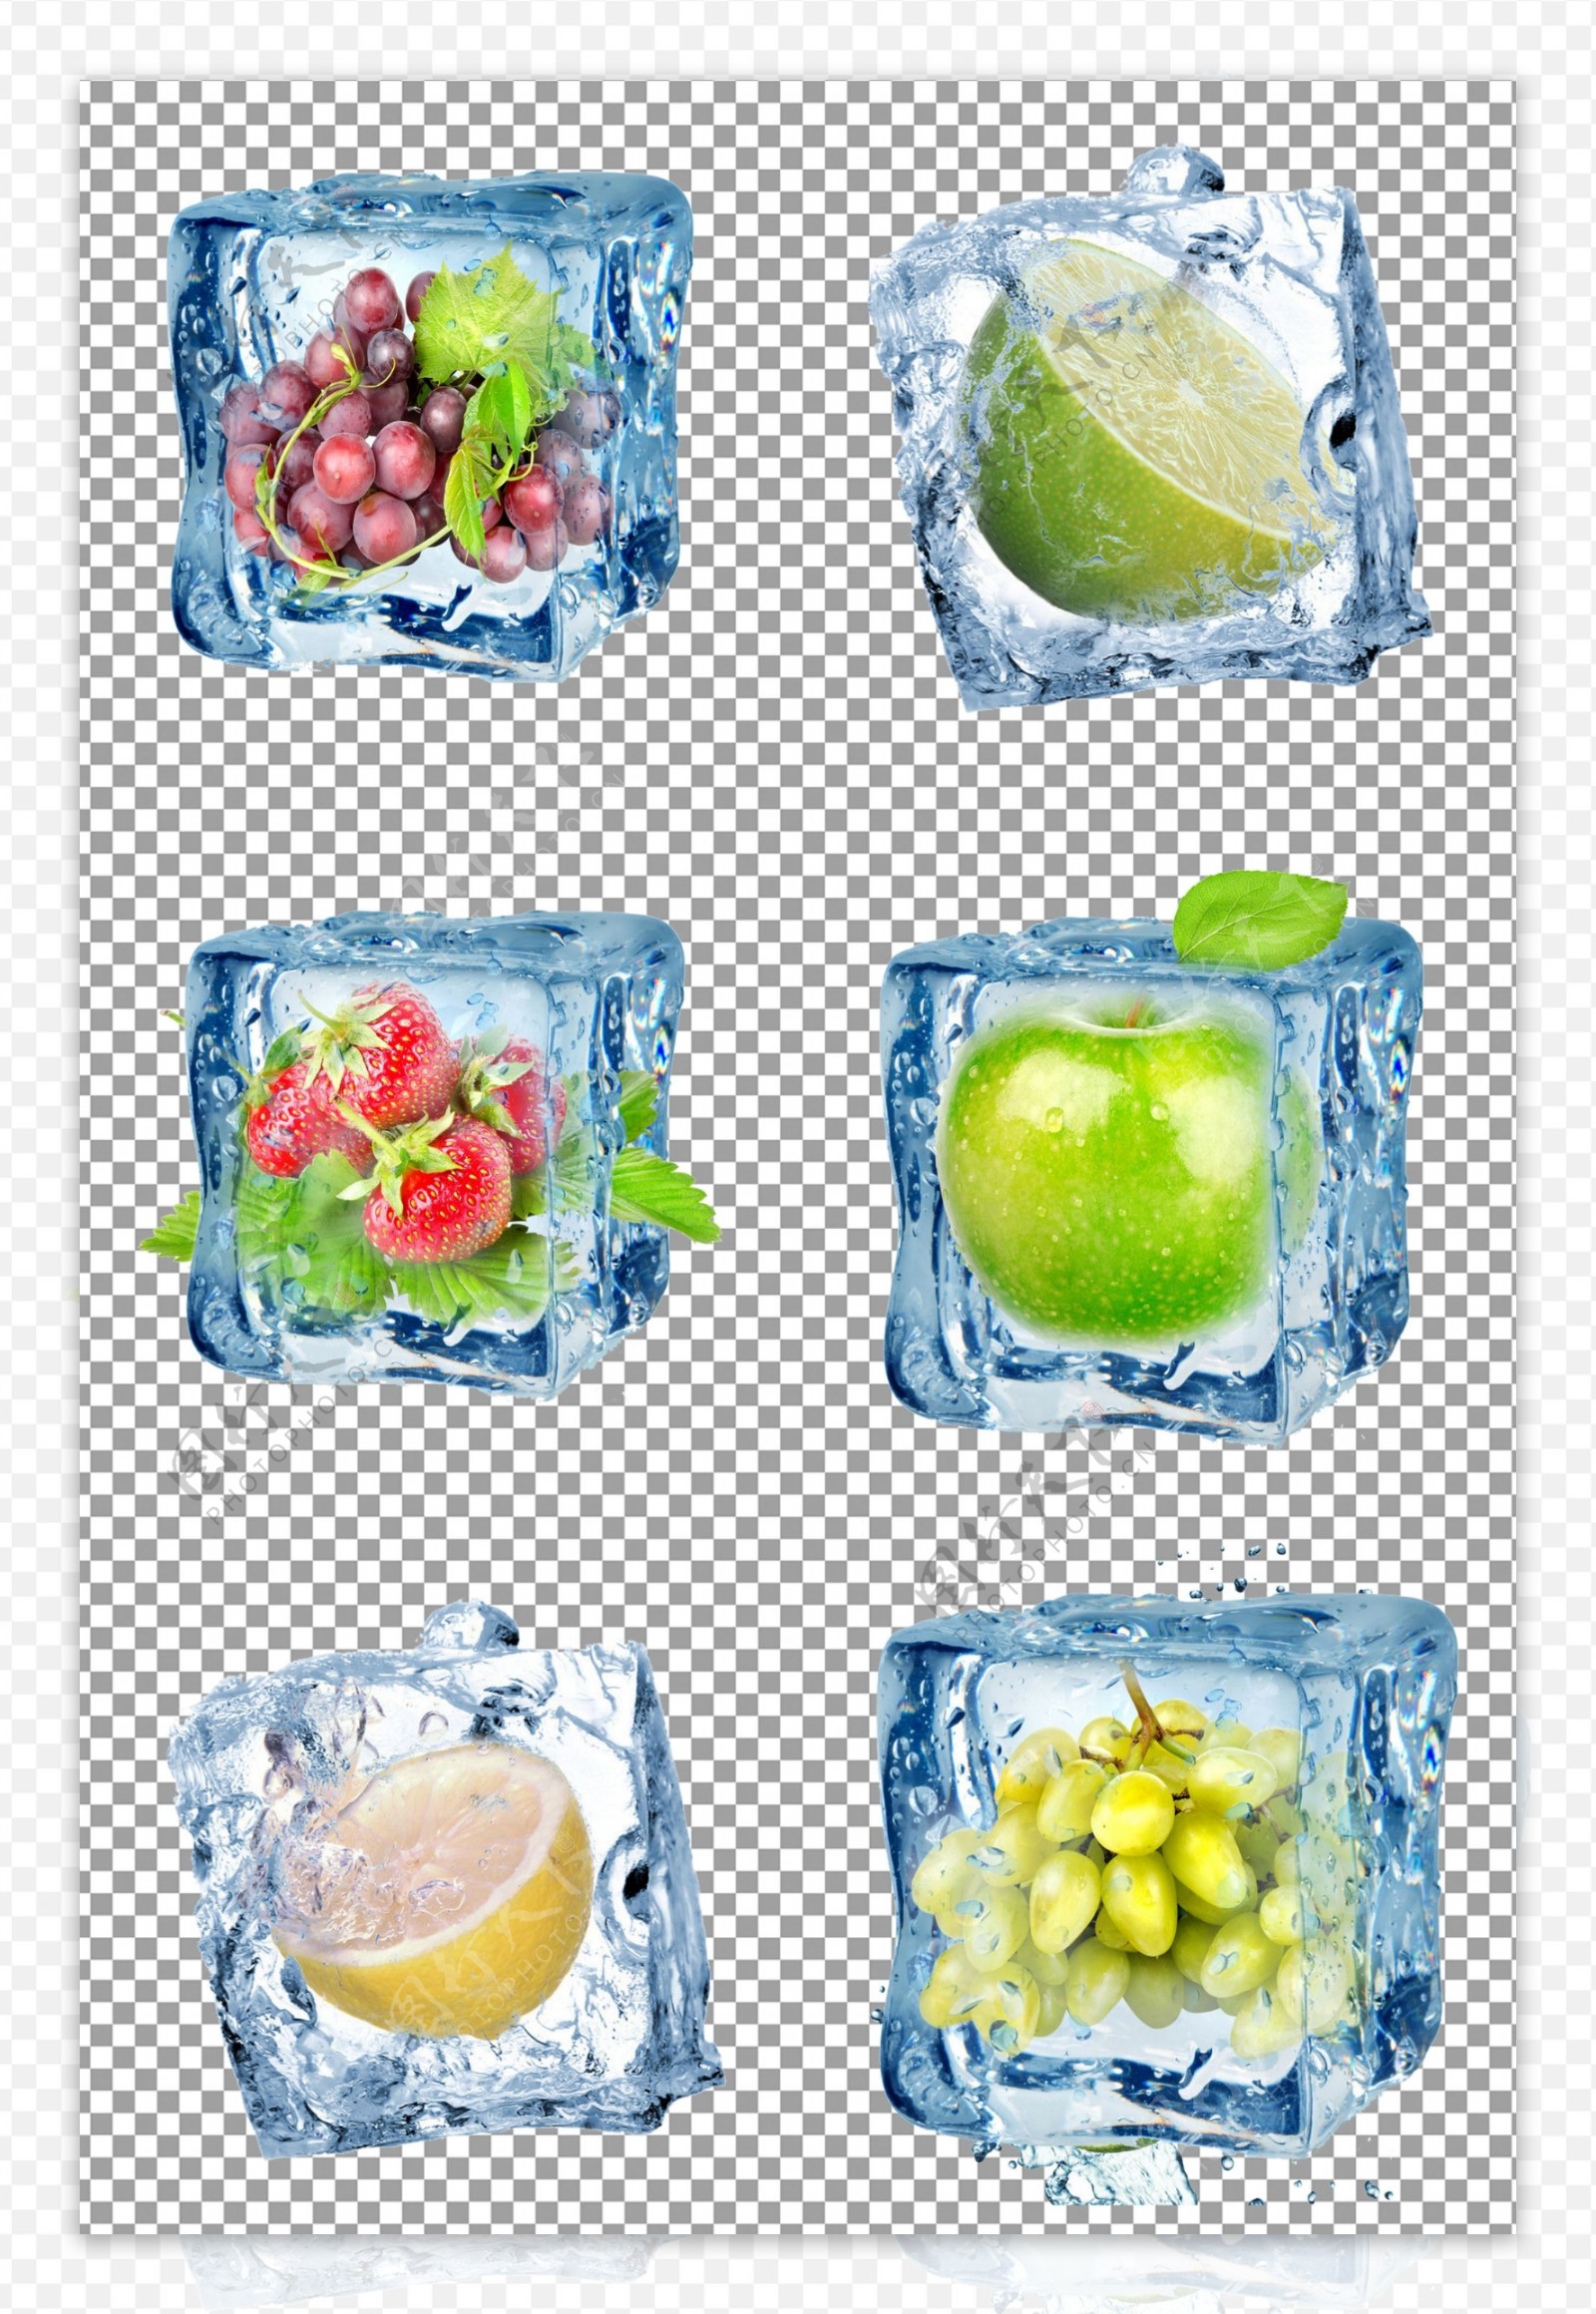 冷冻水果图片大全-冷冻水果高清图片下载-觅知网